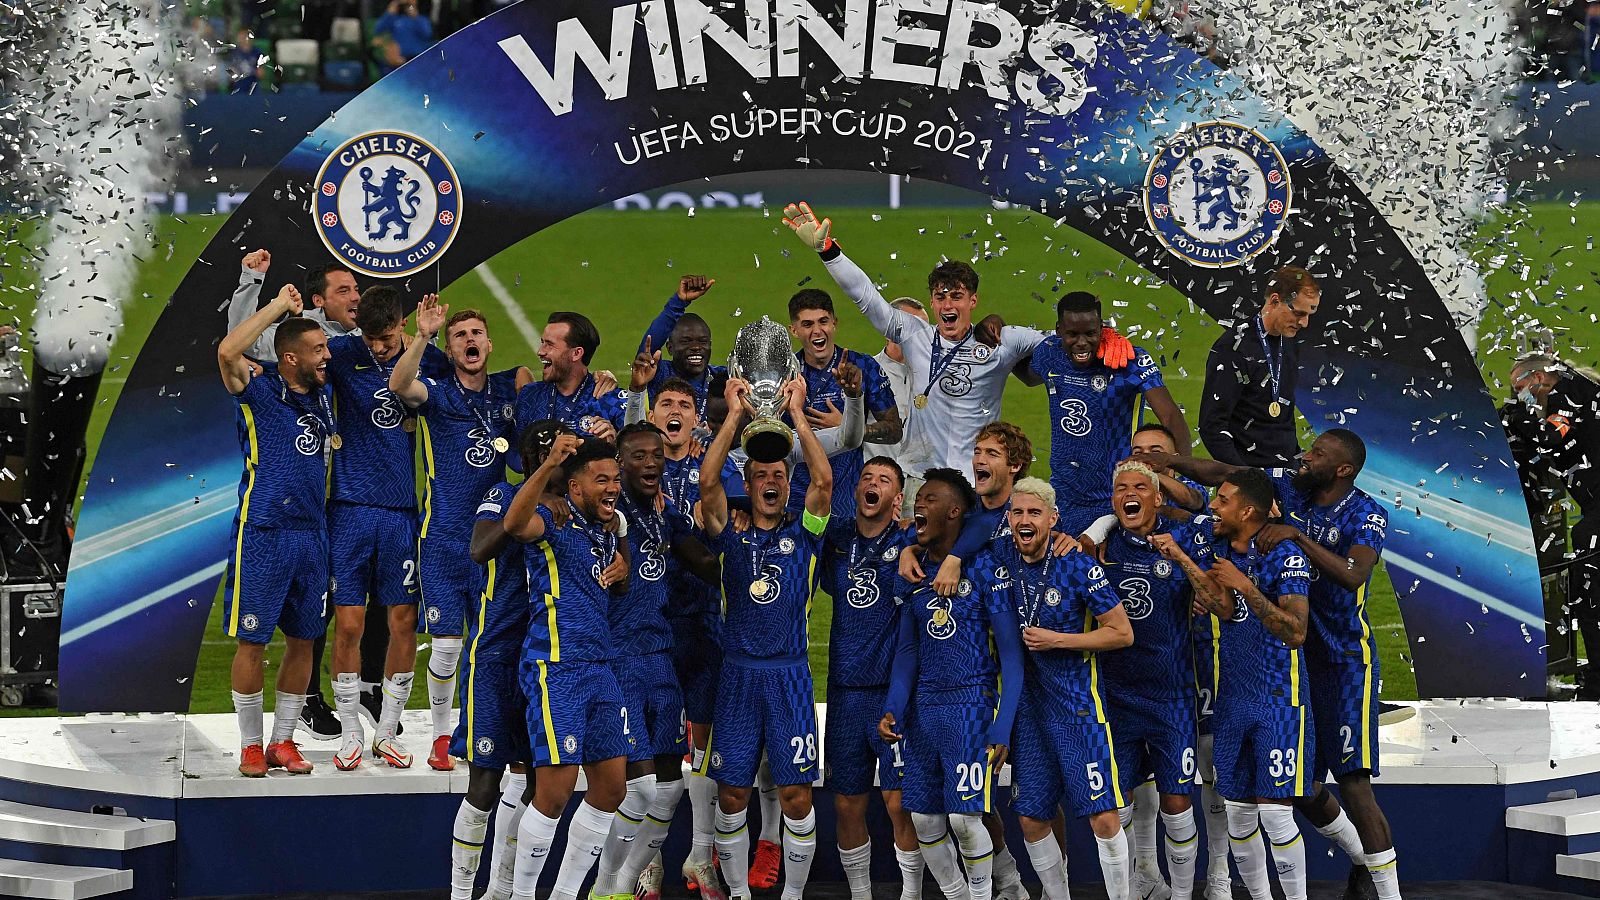 El Chelsea, supercampeón de Europa